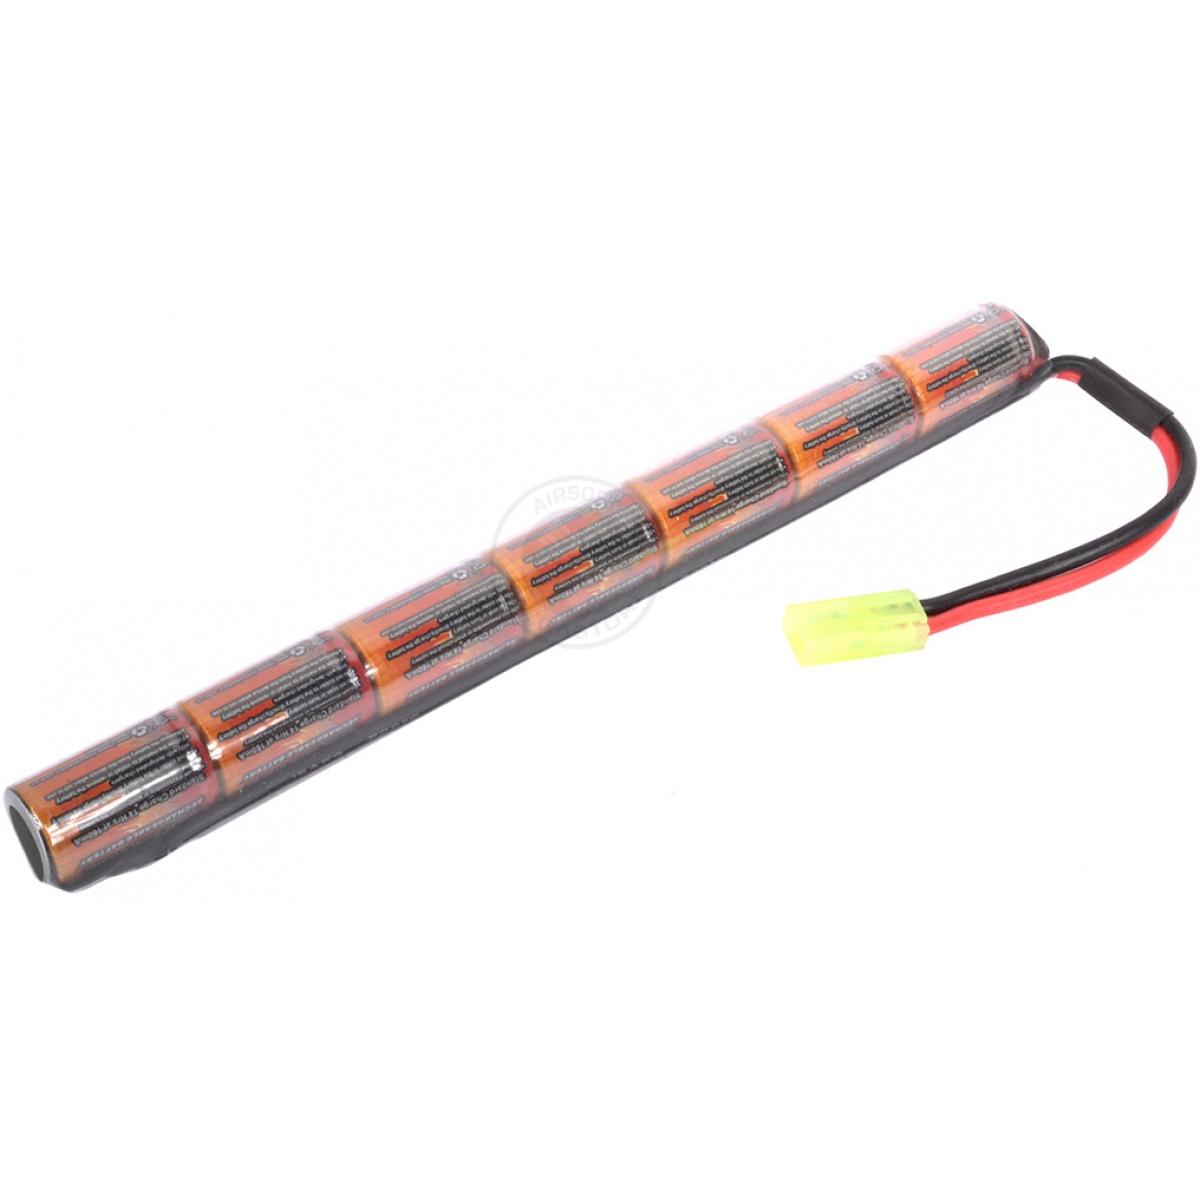 VB-Power 8.4V NiMH Stick-Type Battery for AK-S AK M5-K AEG - 1600